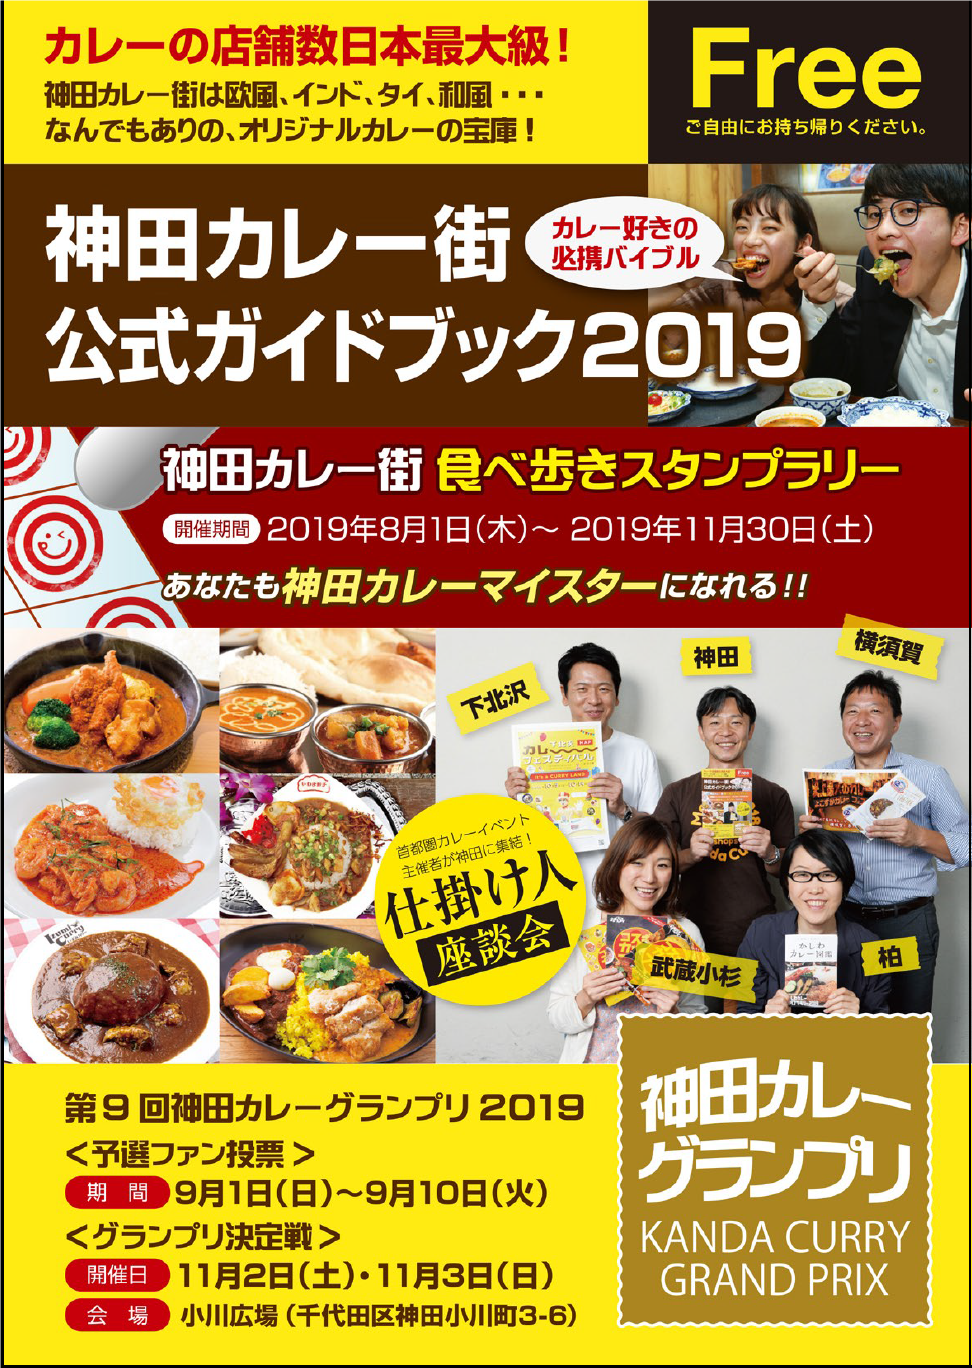 神田カレーグランプリ「神田カレー街食べ歩きスタンプラリー」と同時開催